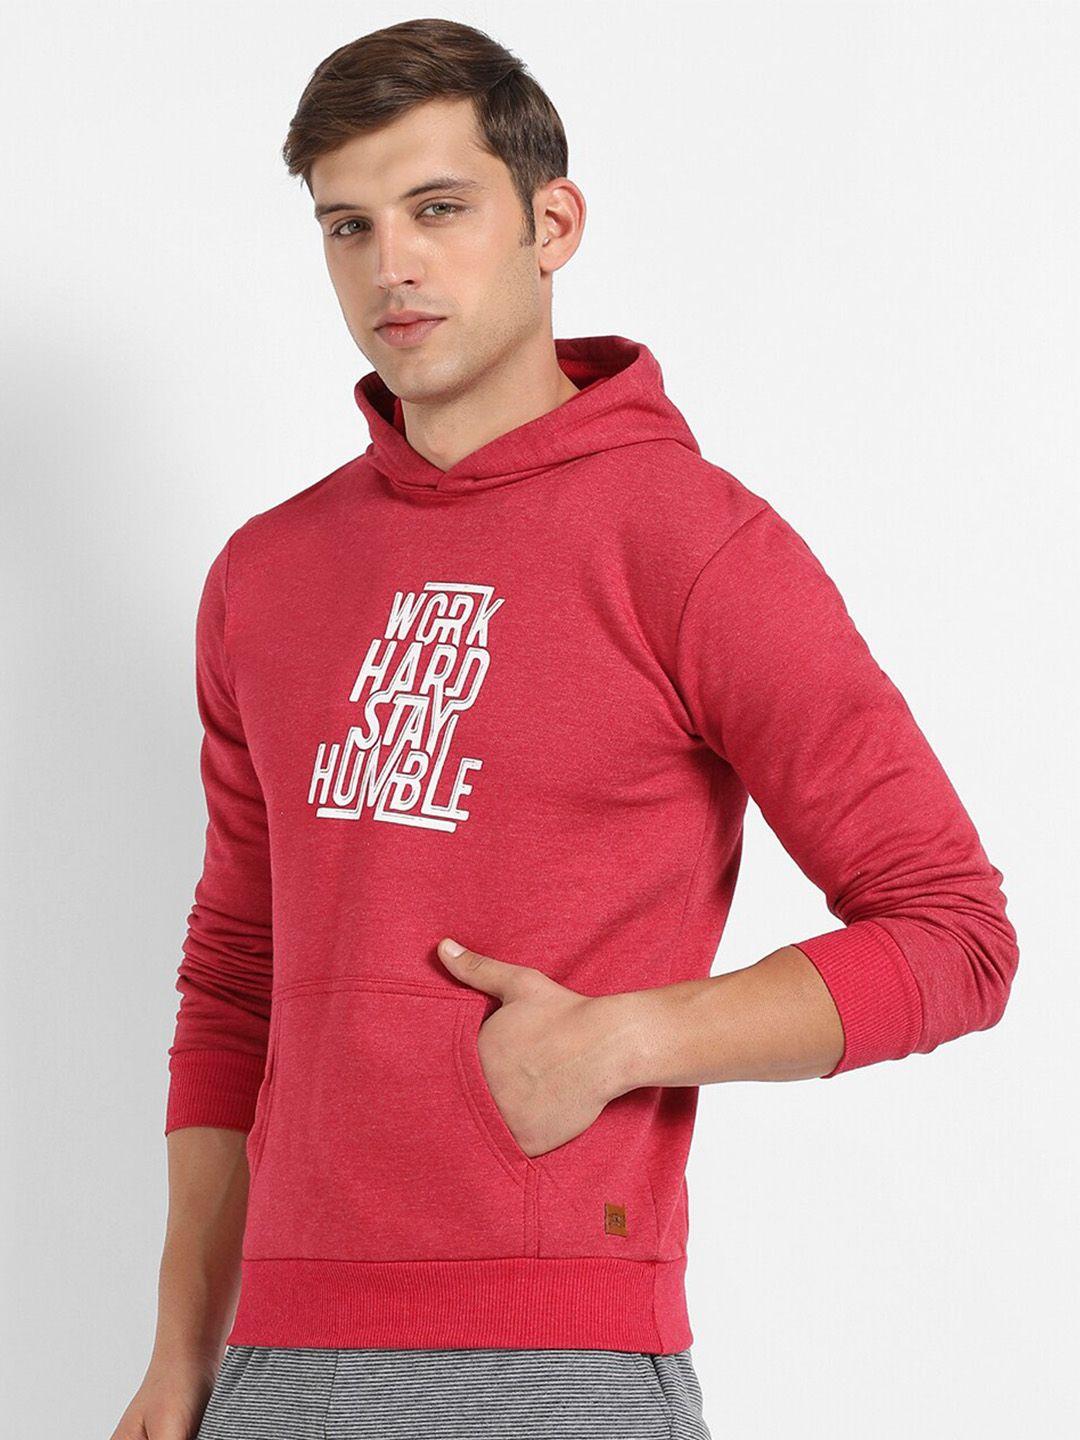 Campus Sutra Men Red Printed Hooded Sweatshirt